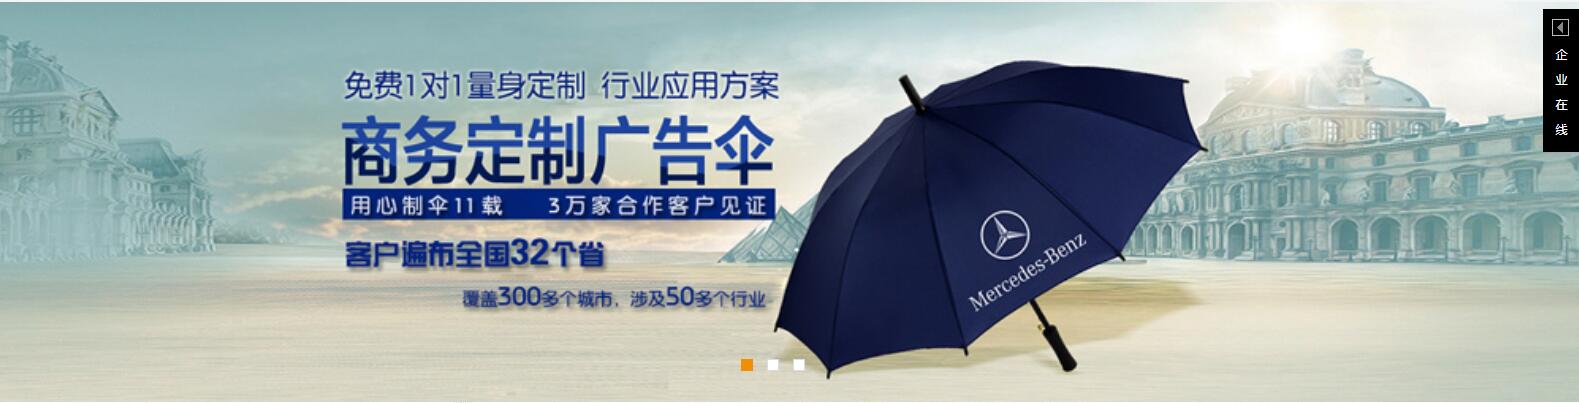 雨伞印logo、钦州雨伞厂、嘉鸿儿童伞定制